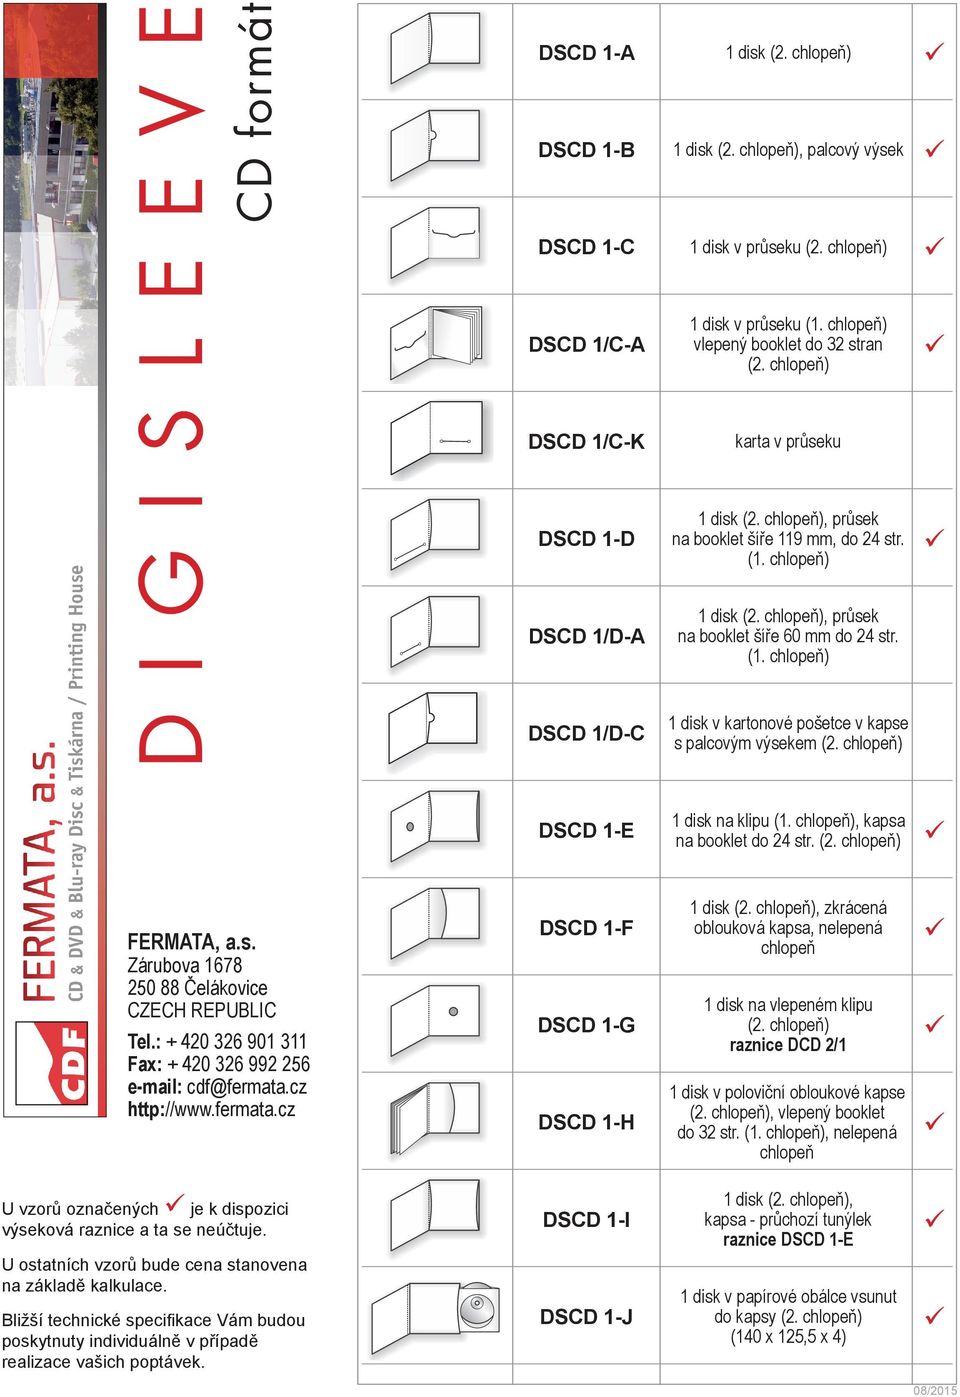 chlopeň), průsek na booklet šíře 60 mm do 24 str. DSCD 1/D-C 1 disk v kartonové pošetce v kapse s palcovým výsekem (2. chlopeň) DSCD 1-E 1 disk na klipu, kapsa na booklet do 24 str. (2. chlopeň) DSCD 1-F 1 disk (2.